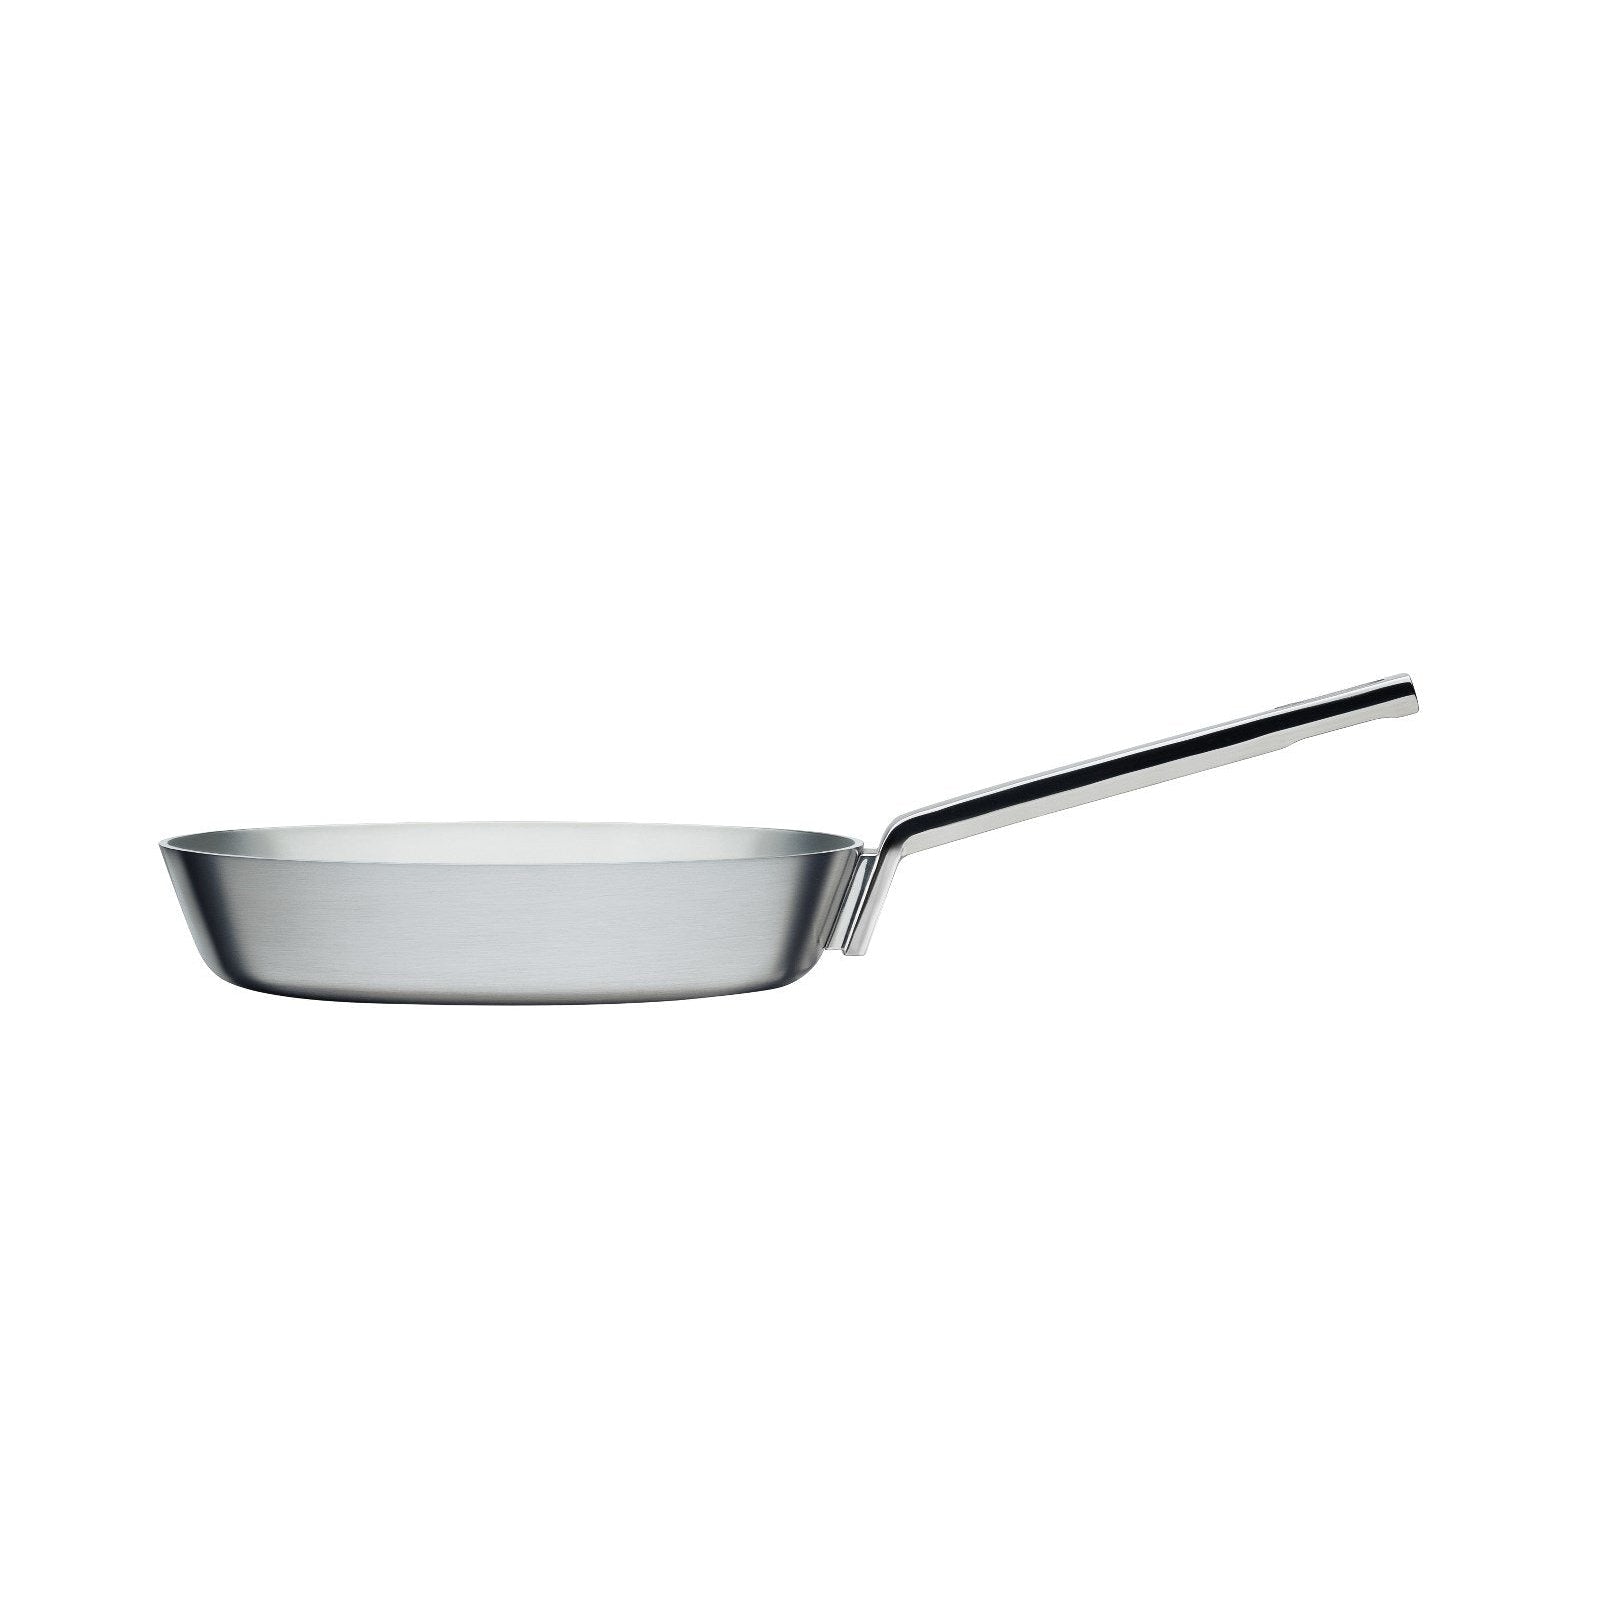 Iittala Tools Frying Pan, 24cm